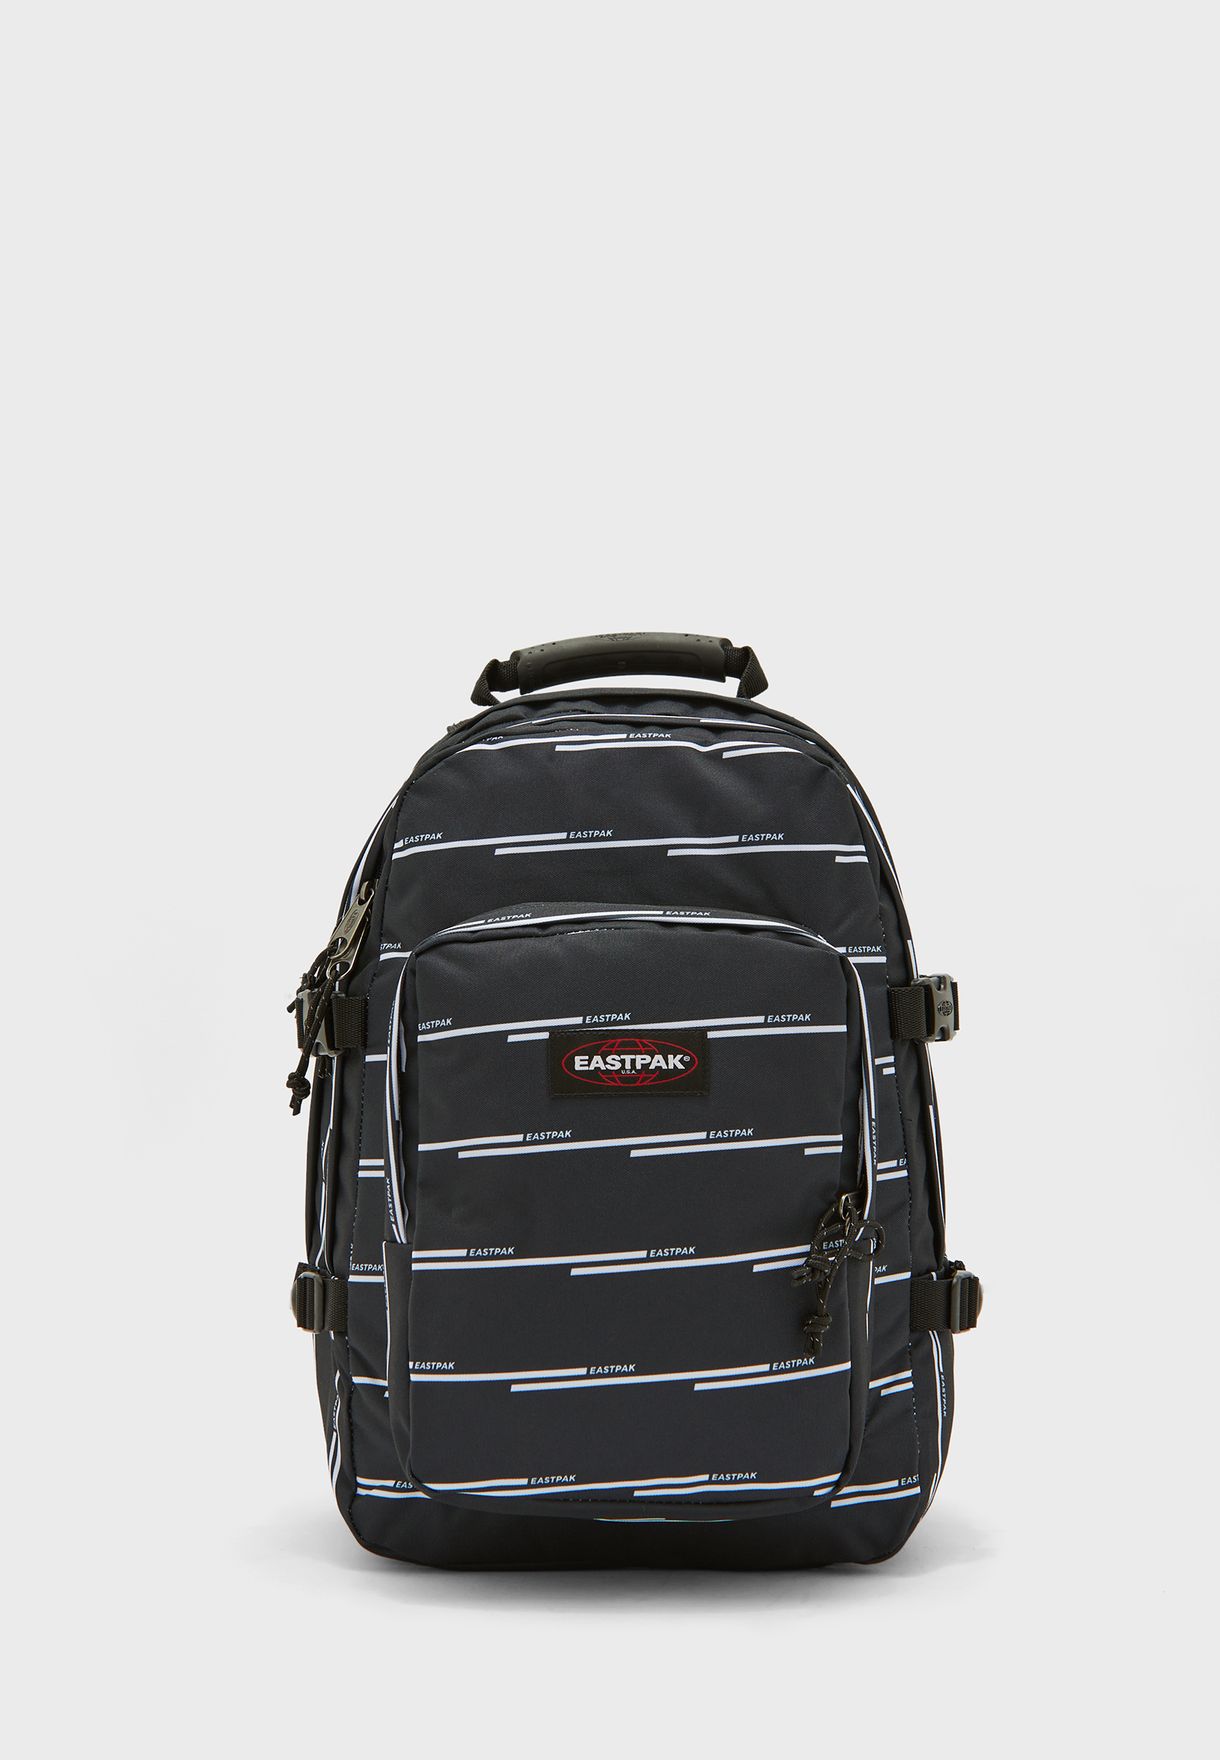 Black One Size Eastpak Mens Provider Backpack